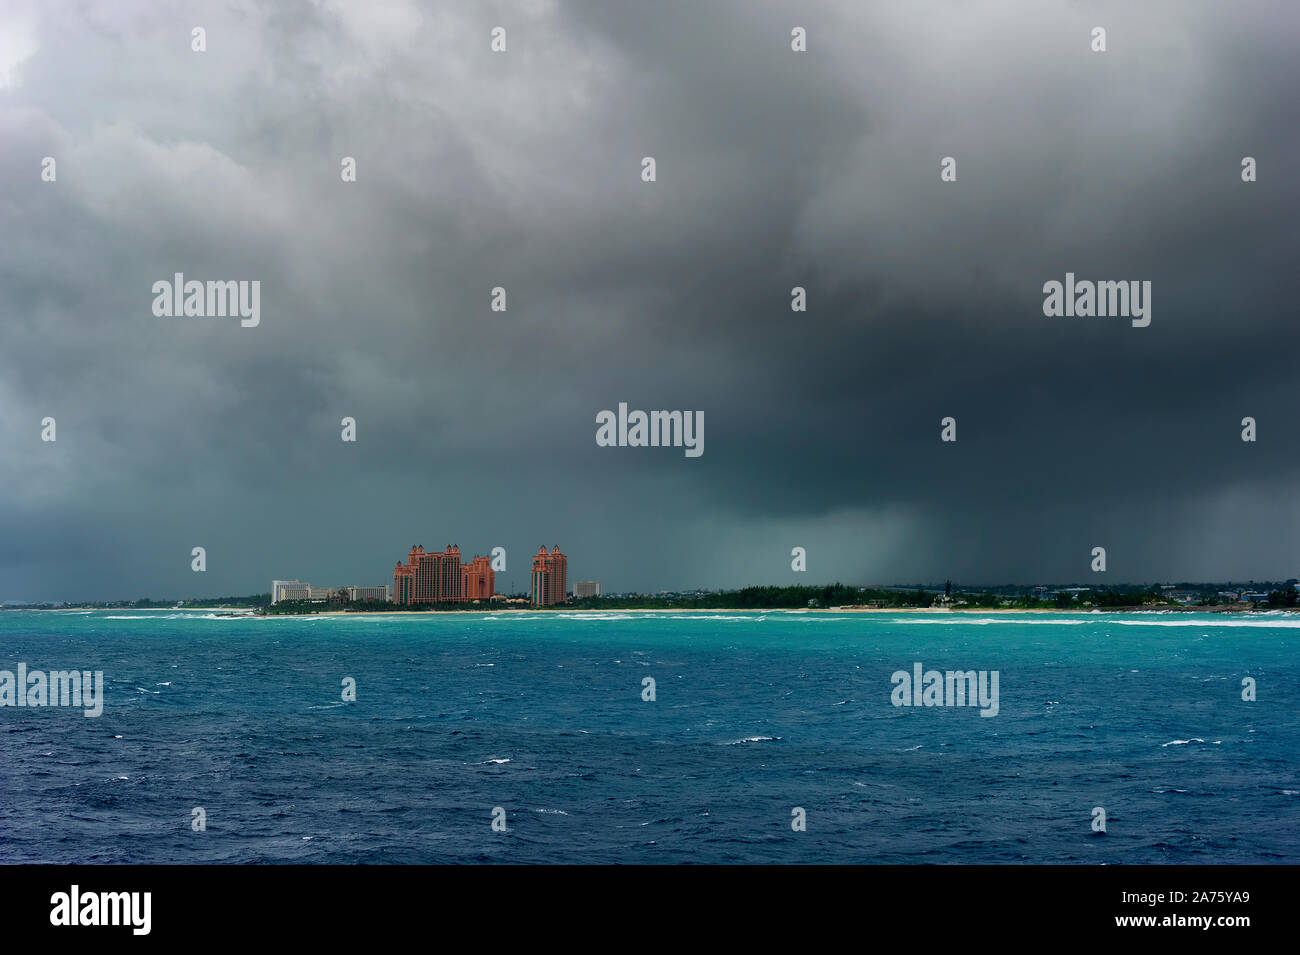 Vistas de la isla de paraíso bajo cielos tormentosos donde Atlantis Resort puede ser visto desde un barco de crucero entrando en el puerto de Nassau. Foto de stock